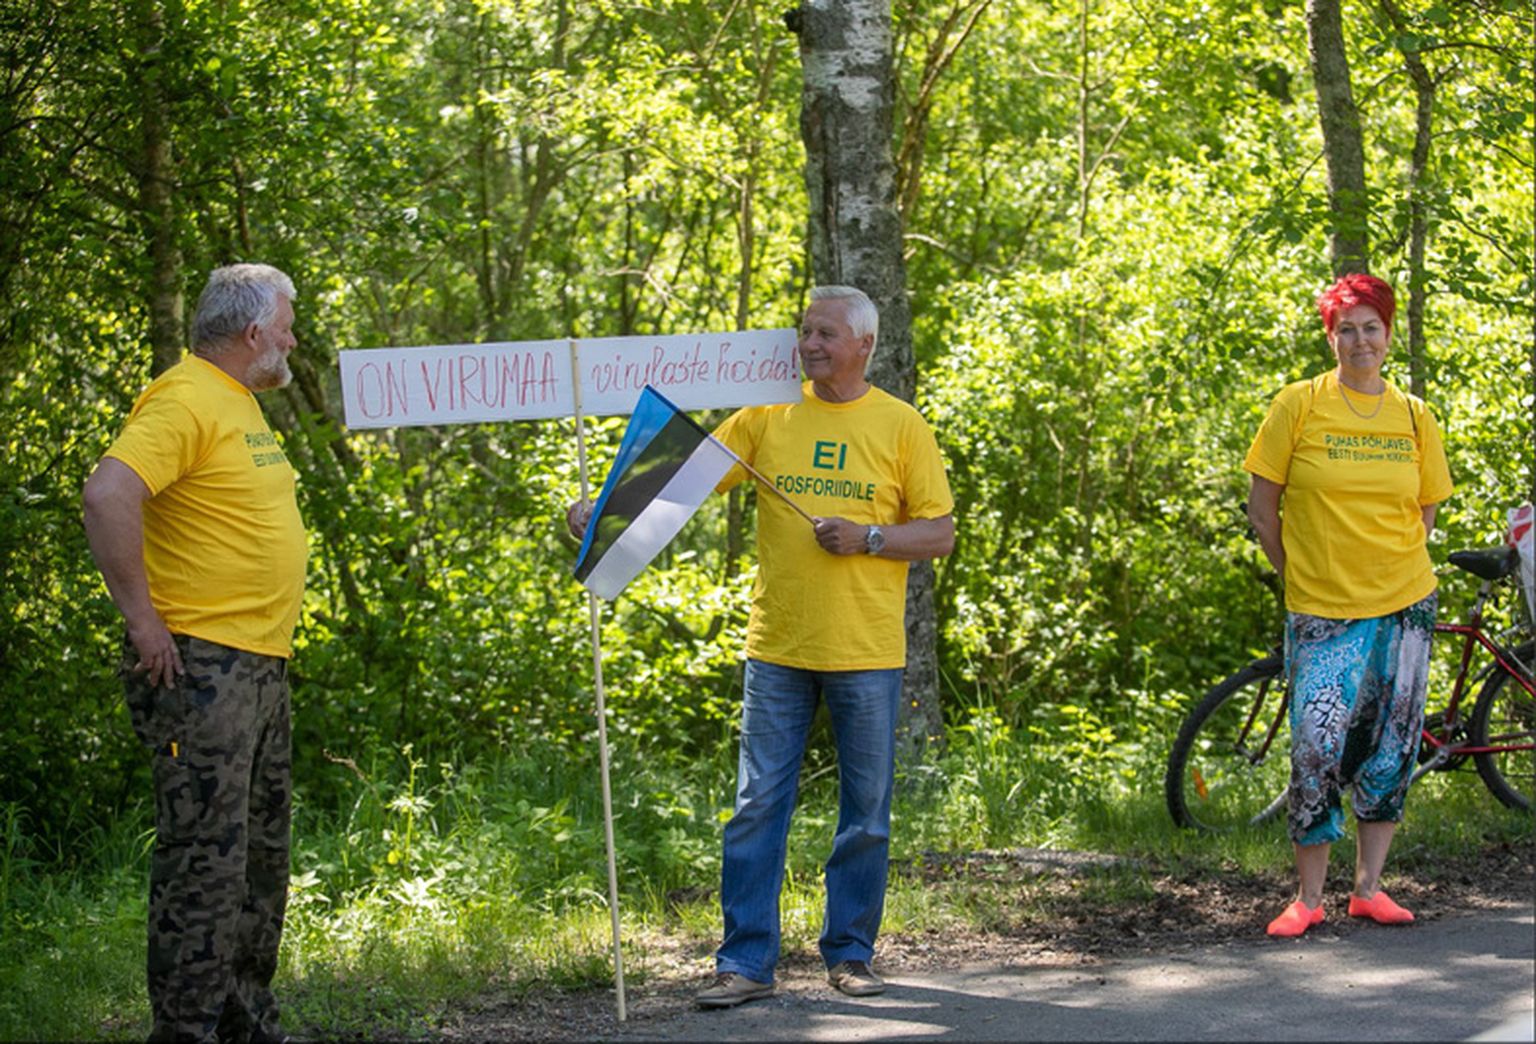 Демонстранты в желтых футболках выражали свое противостояние и планам государственной геологической службы изучать фосфориты в Вирумаа.